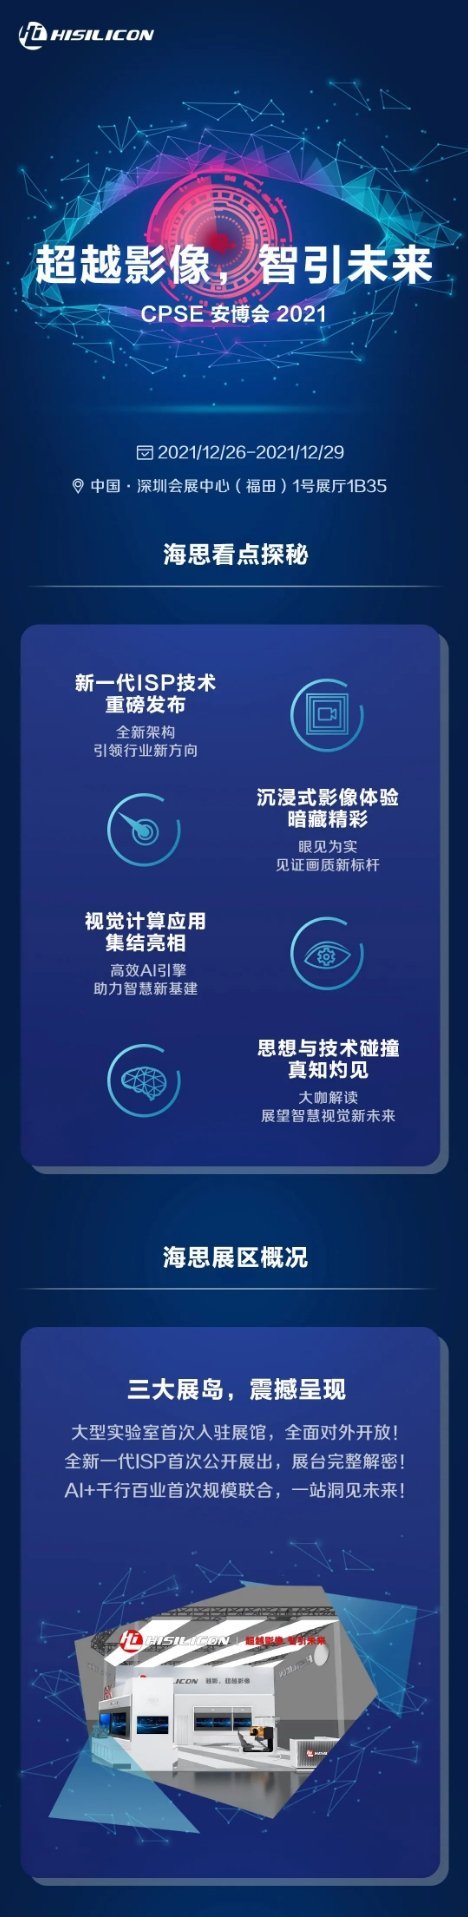 Un possibile poster di HiSilicon per la prossima fiera. (Fonte: HuaweiFans via Weibo)